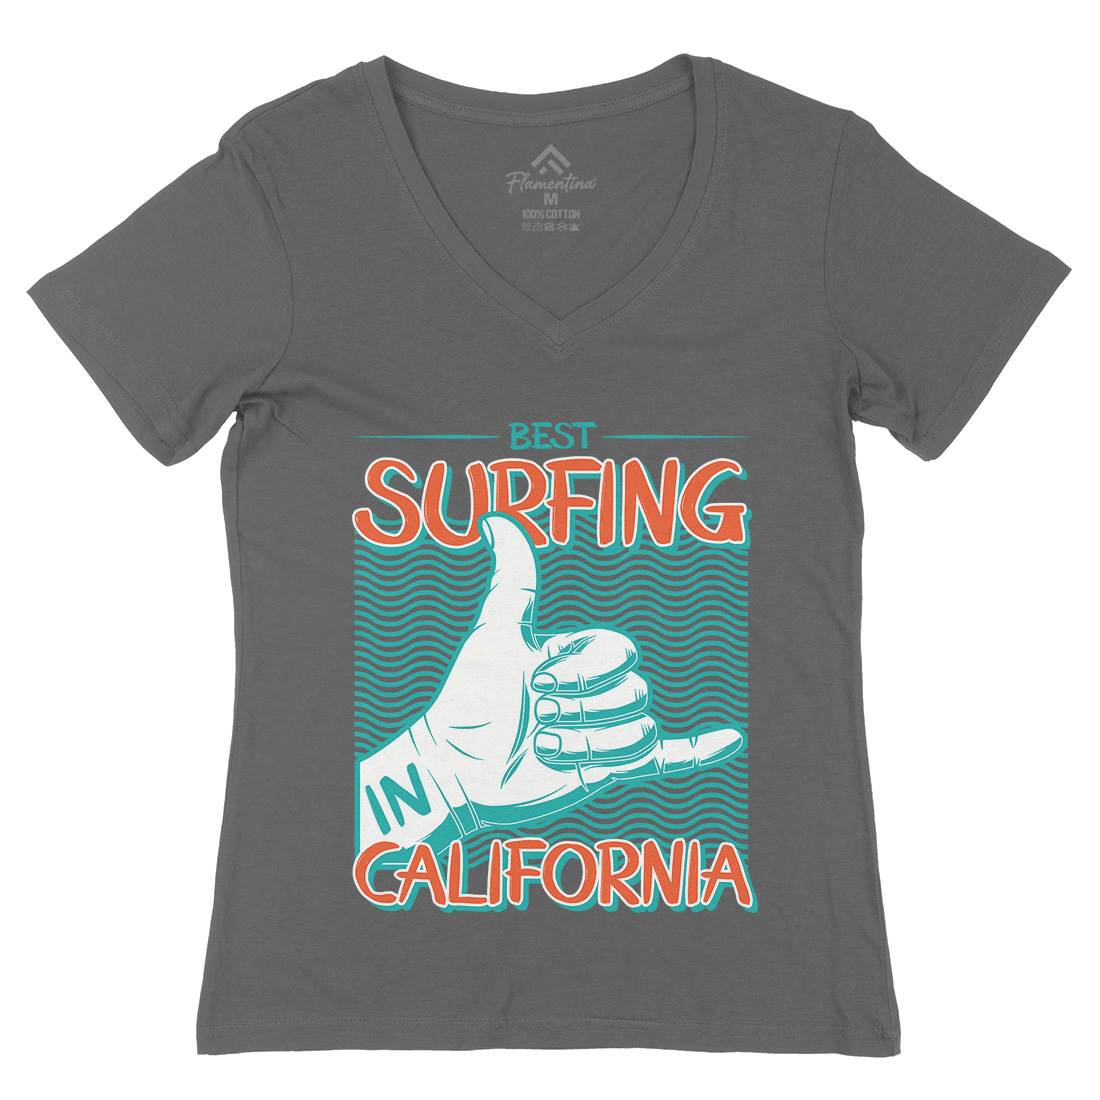 Best Surfing Womens Organic V-Neck T-Shirt Surf D908